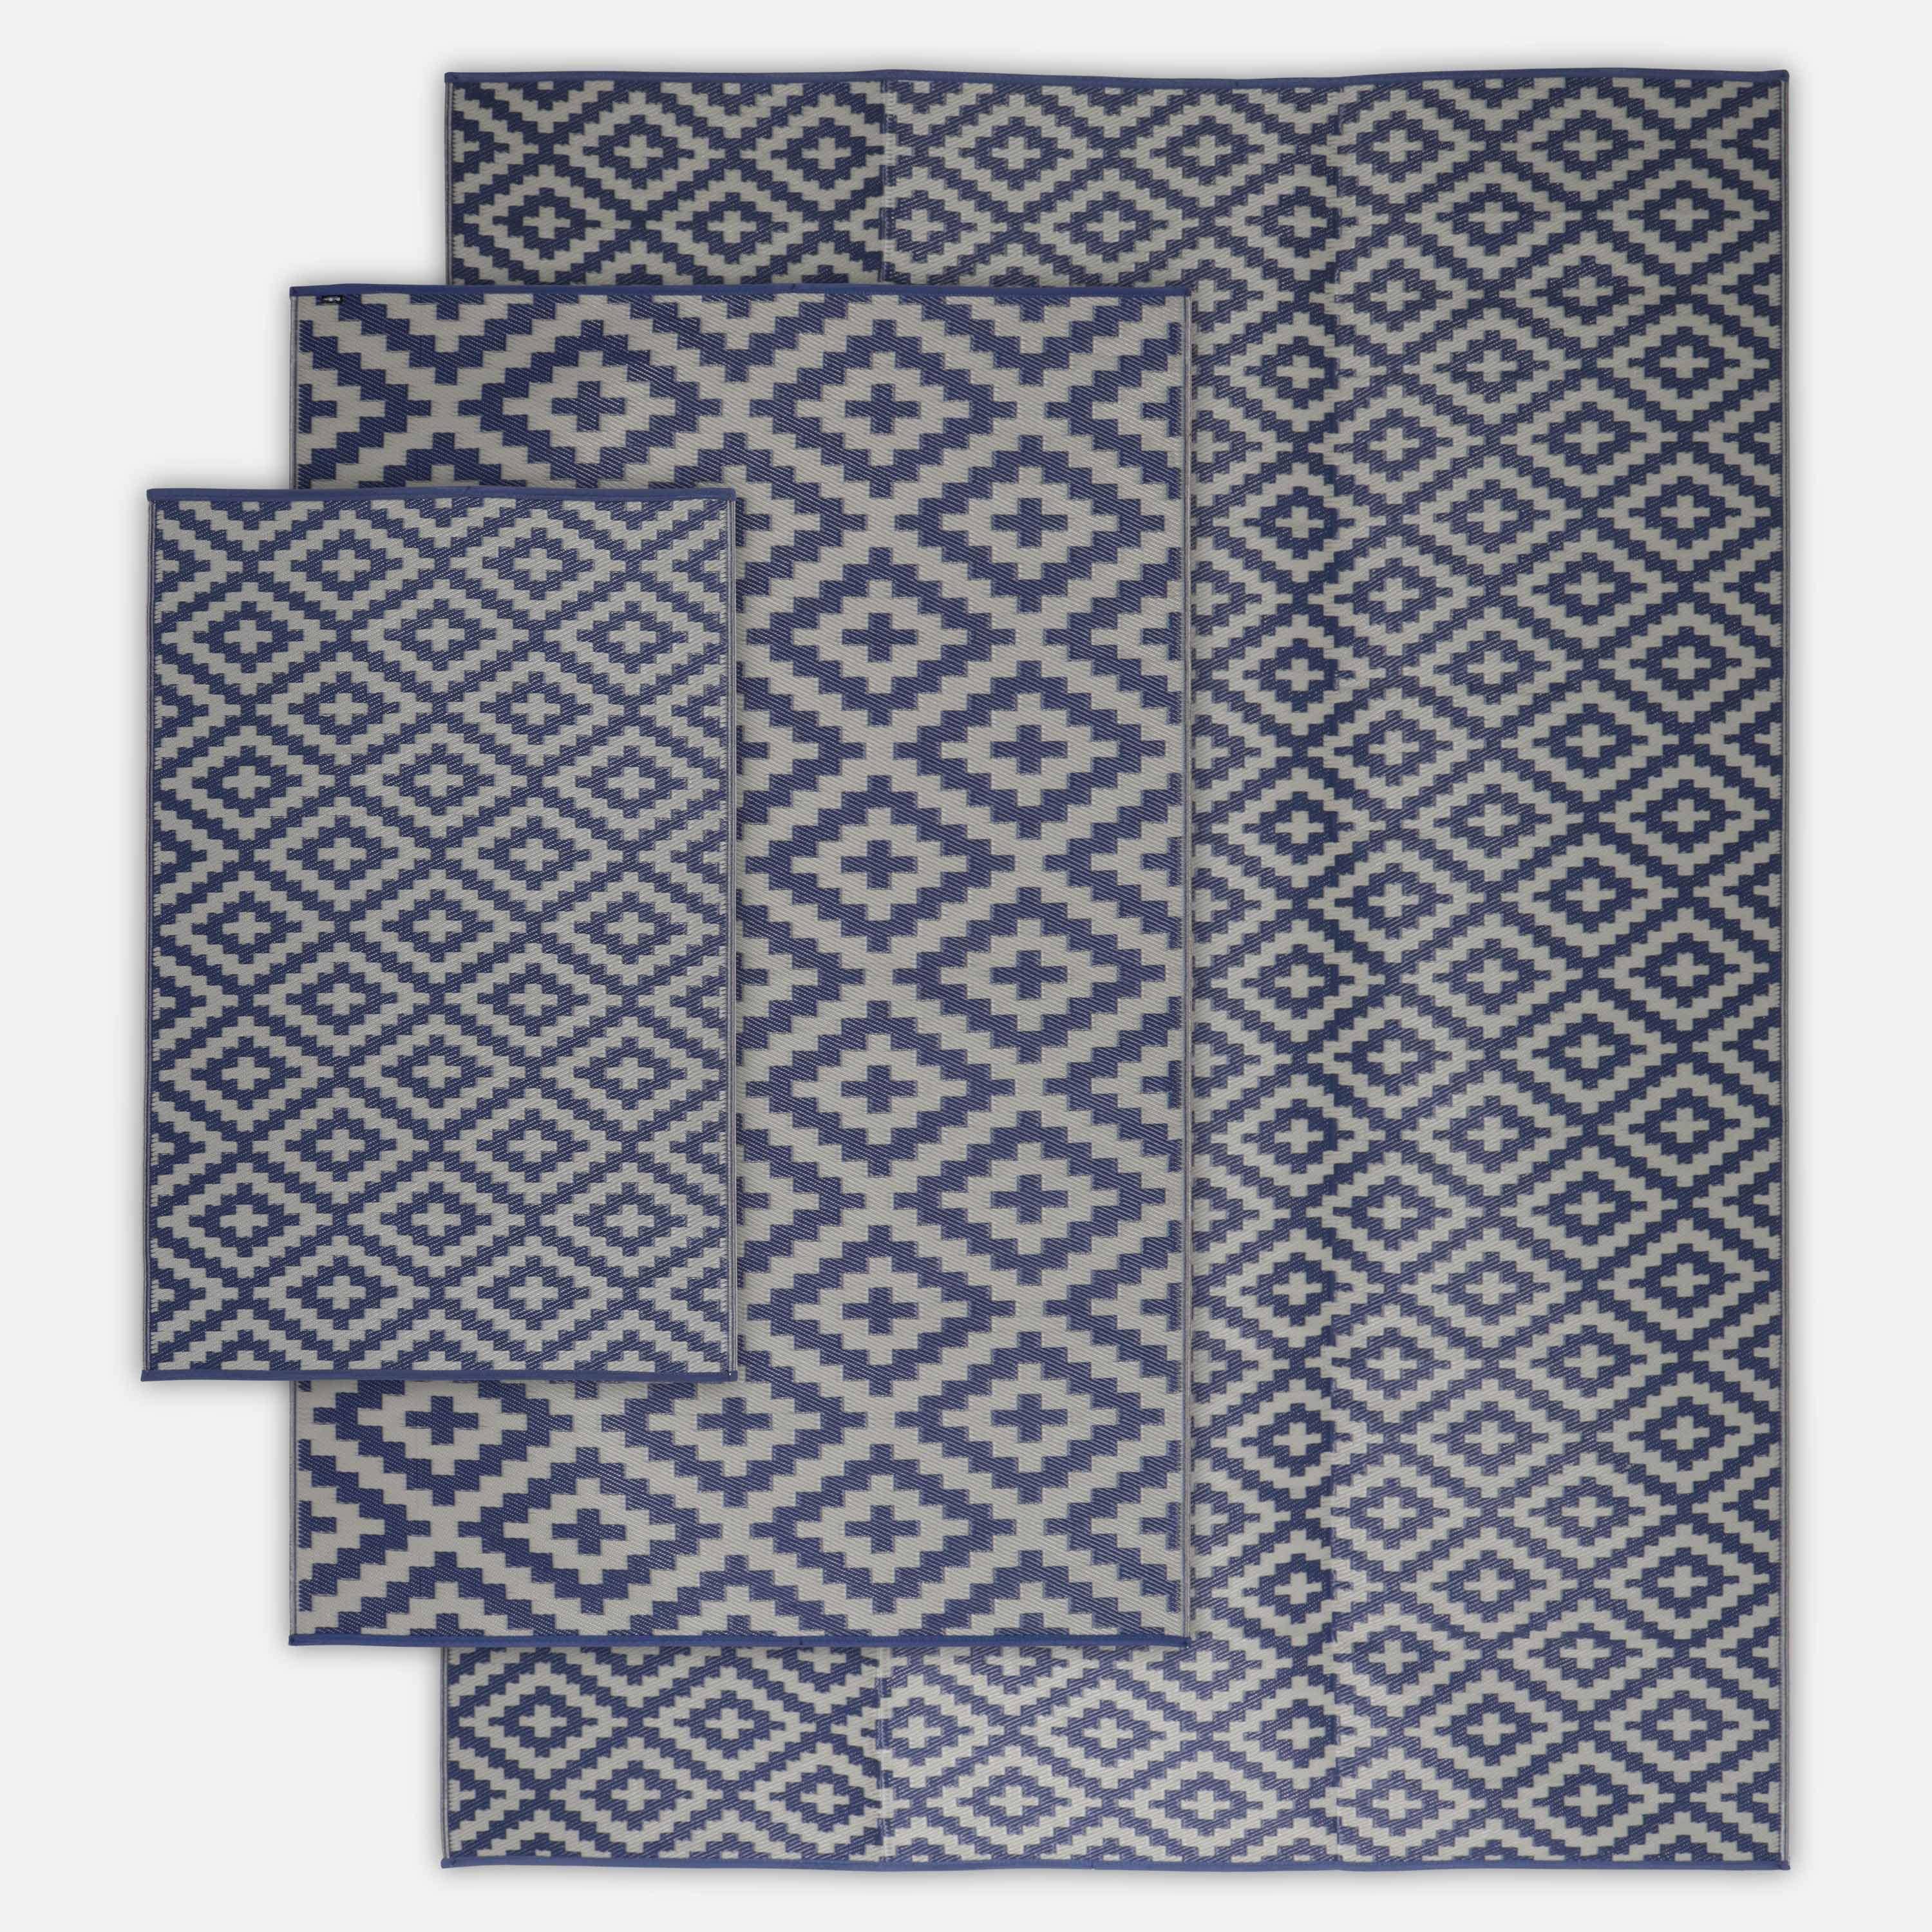 Tapis d’extérieur 120x180cm STOCKHOLM - Rectangulaire, motif losanges bleu / beige, jacquard, réversible, indoor / outdoor, Photo4